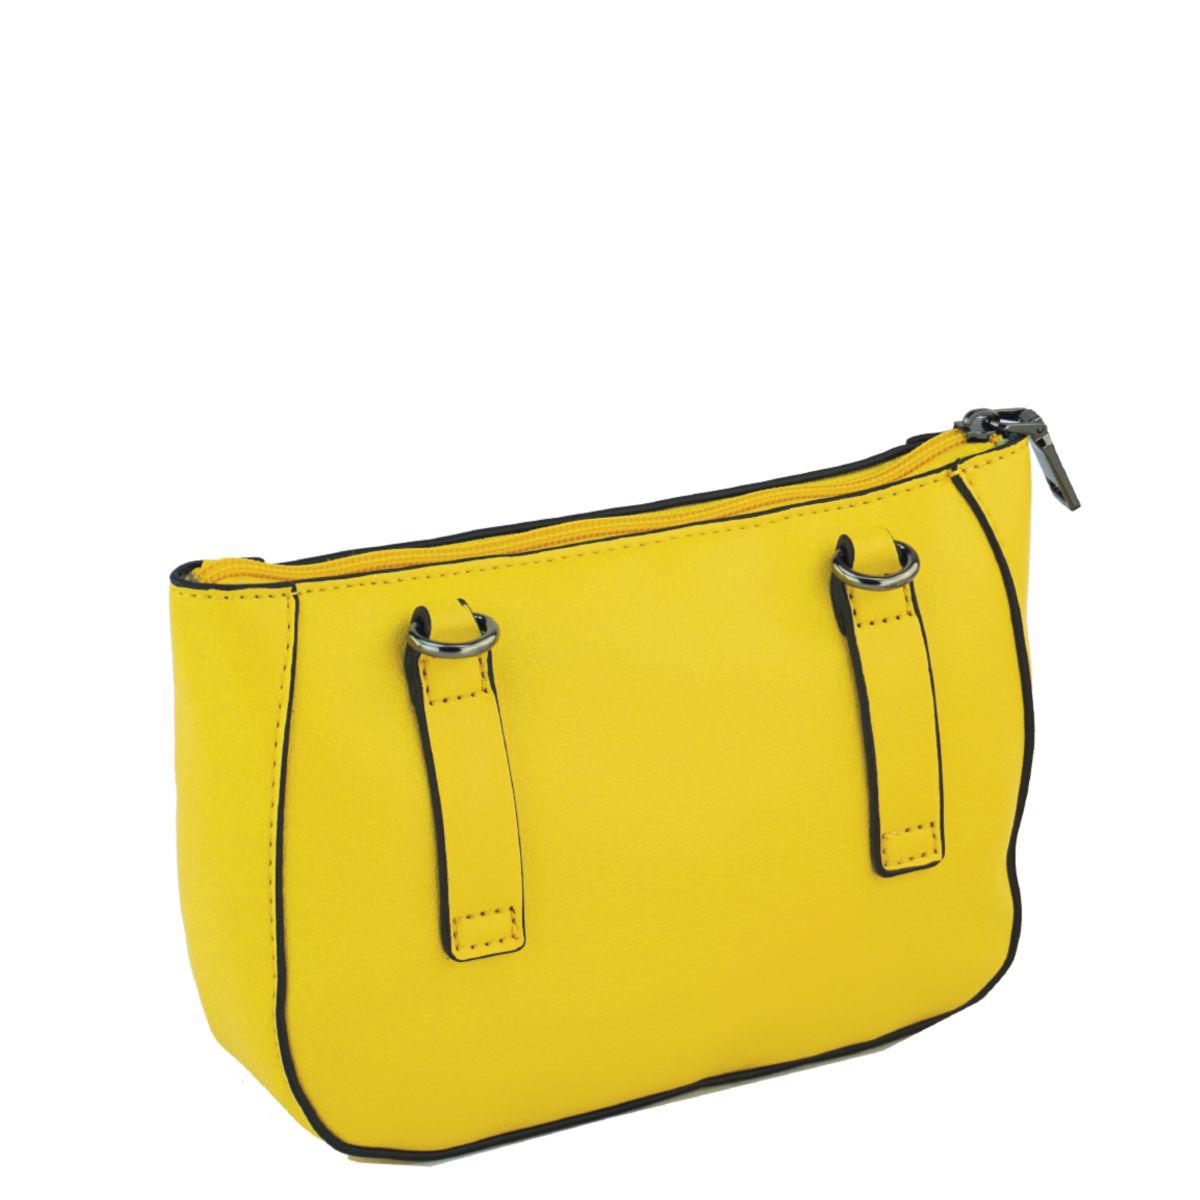 Gürteltasche Bodybag Mia in gelb - 516-120-68